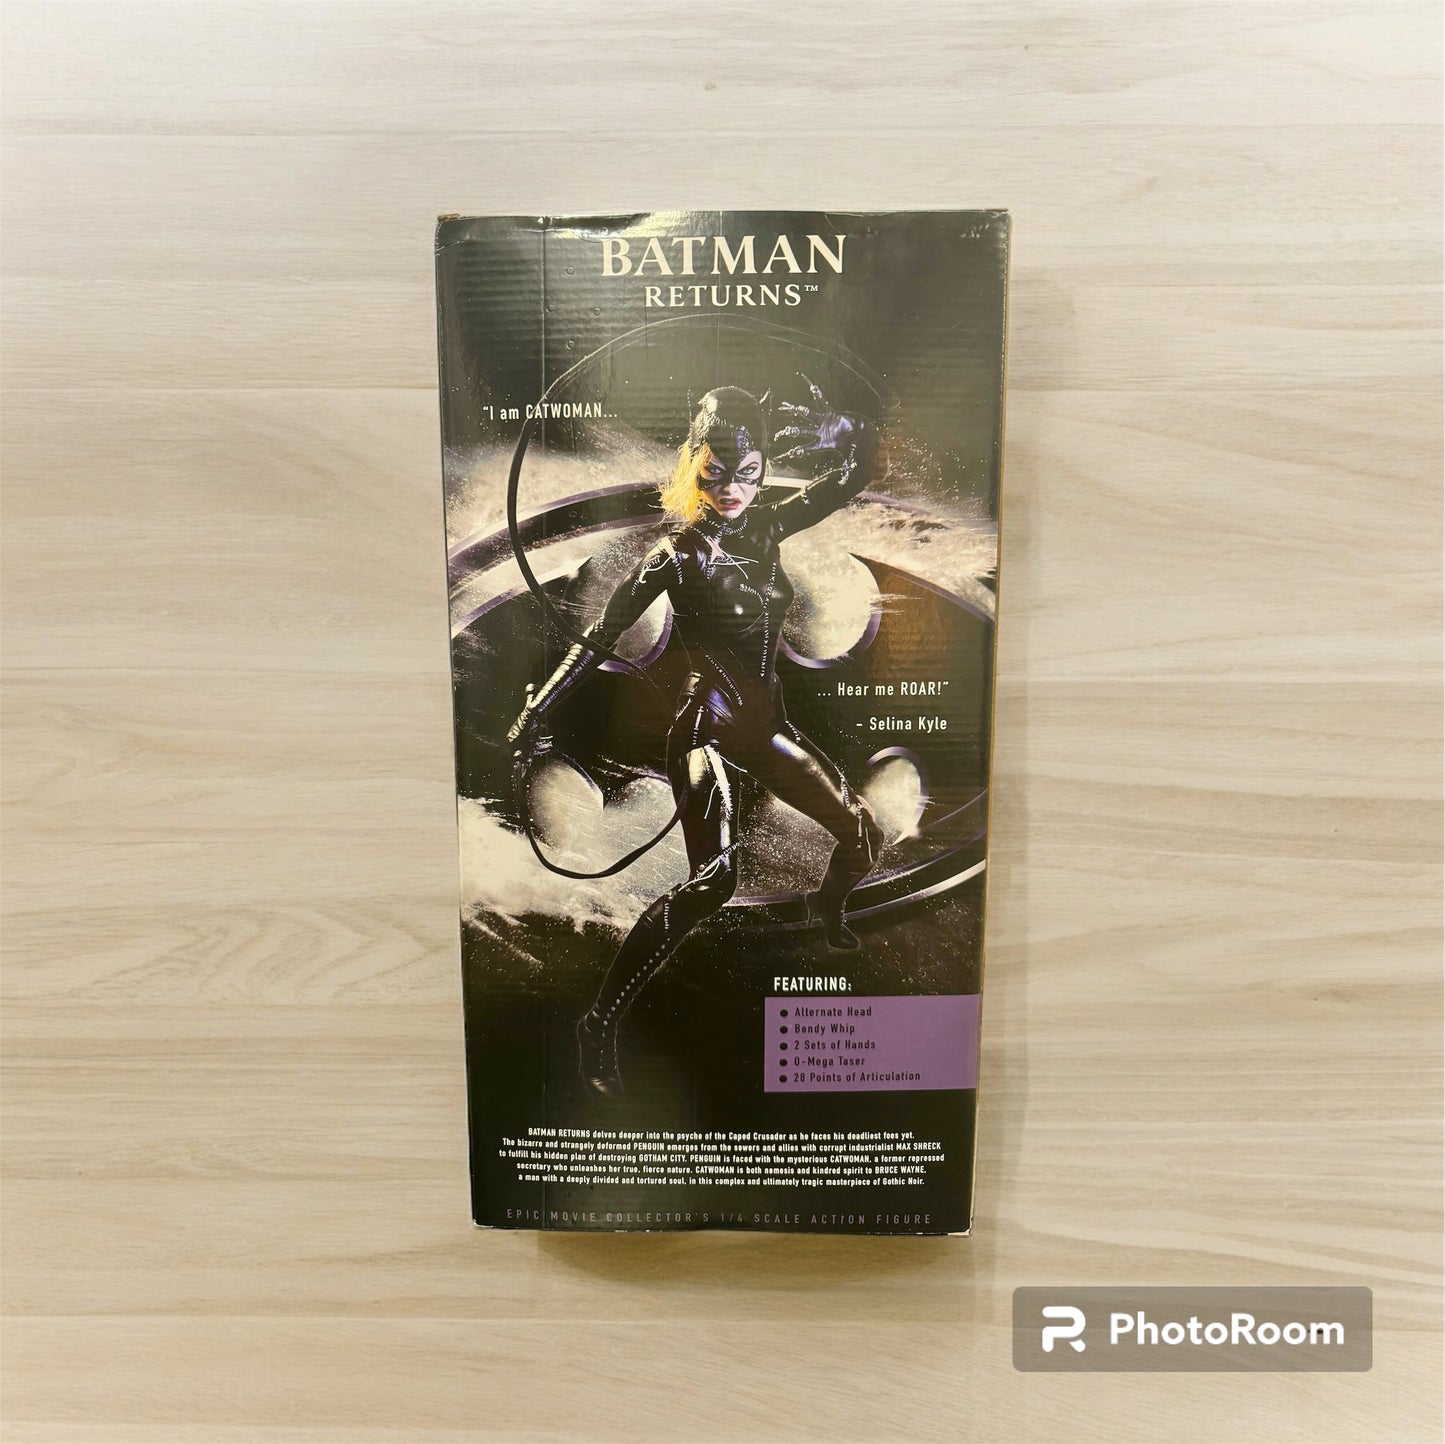 NECA Batman Returns Catwoman Action Figure (1/4 Scale)